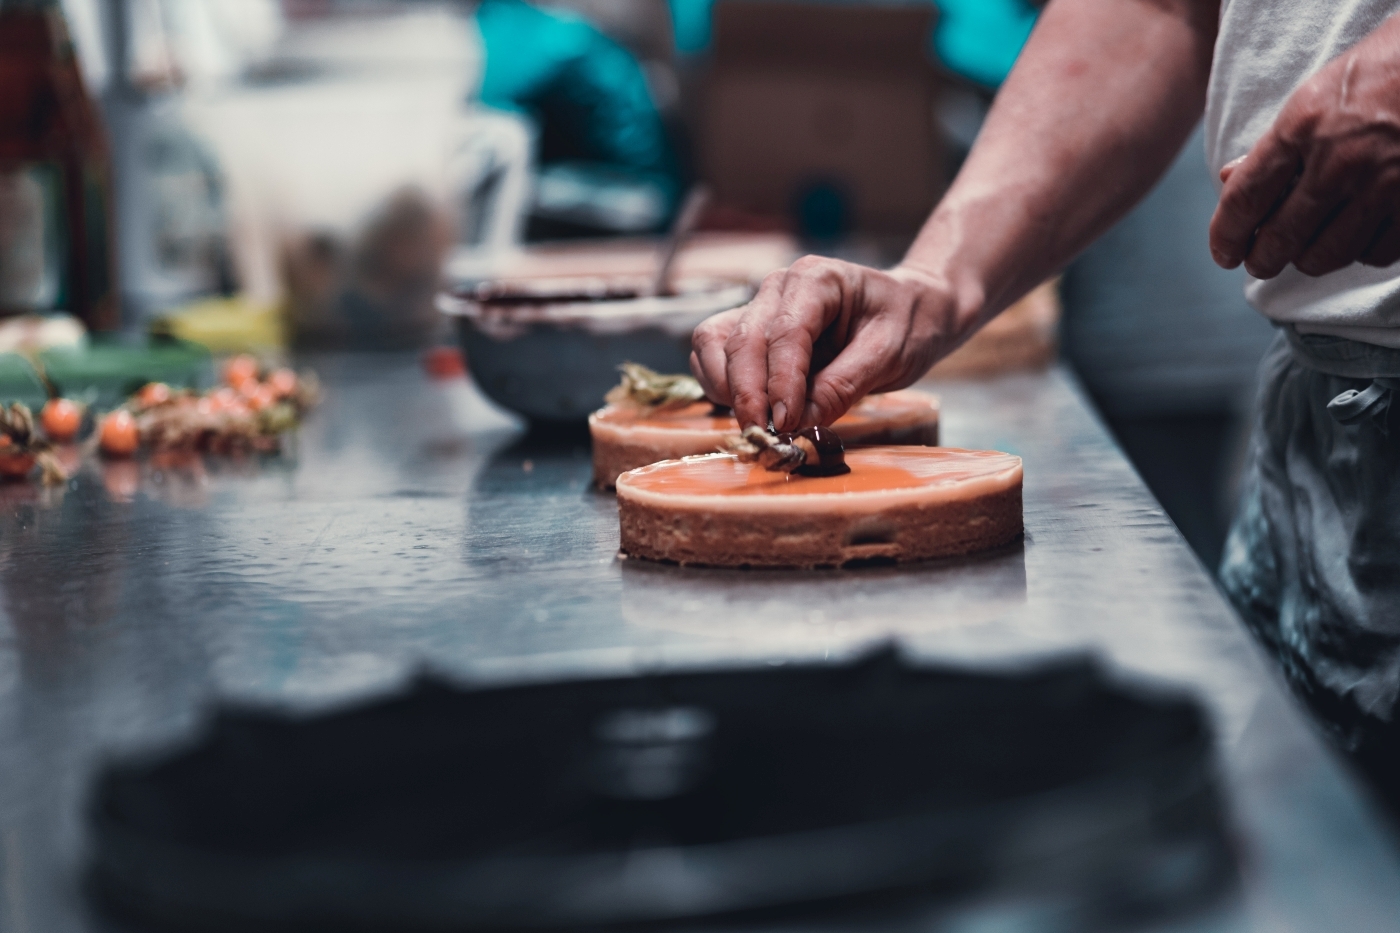 Eine Businessreportage für das Cafe Ruffini in München von dem Fotografen Daniel Schubert aka Steins Pictures. Die Fotos wurden in der hauseigenen Backstube gemacht und zeigen Konditoren bei ihren Handwerk, speziell bei der Gestaltung der stadtweit bekannten Ruffini Torten und Kuchen. 